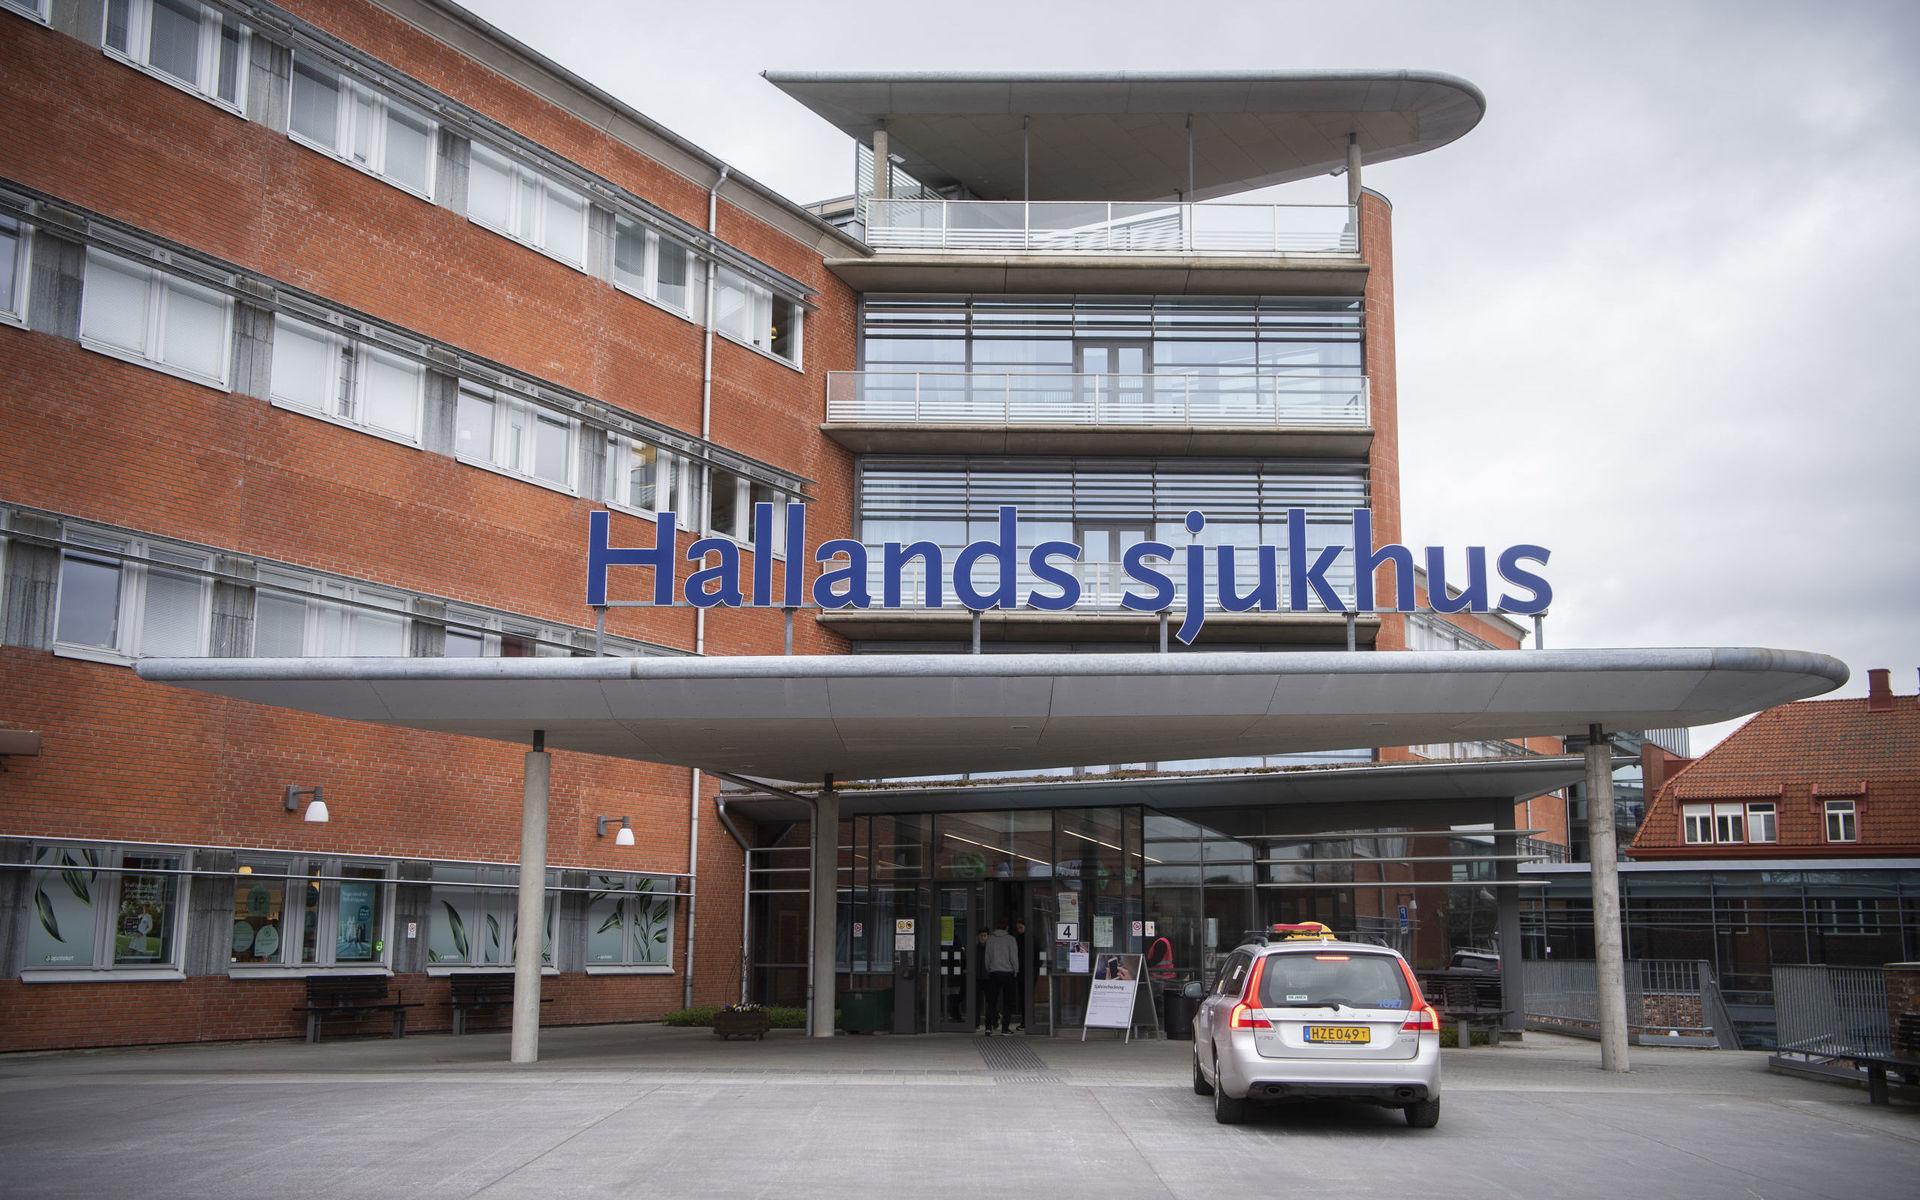 Studien är gjord på 471 barn födda på sjukhuset i Halmstad. Både barn födda vaginalt och barn födda genom kejsarsnitt.